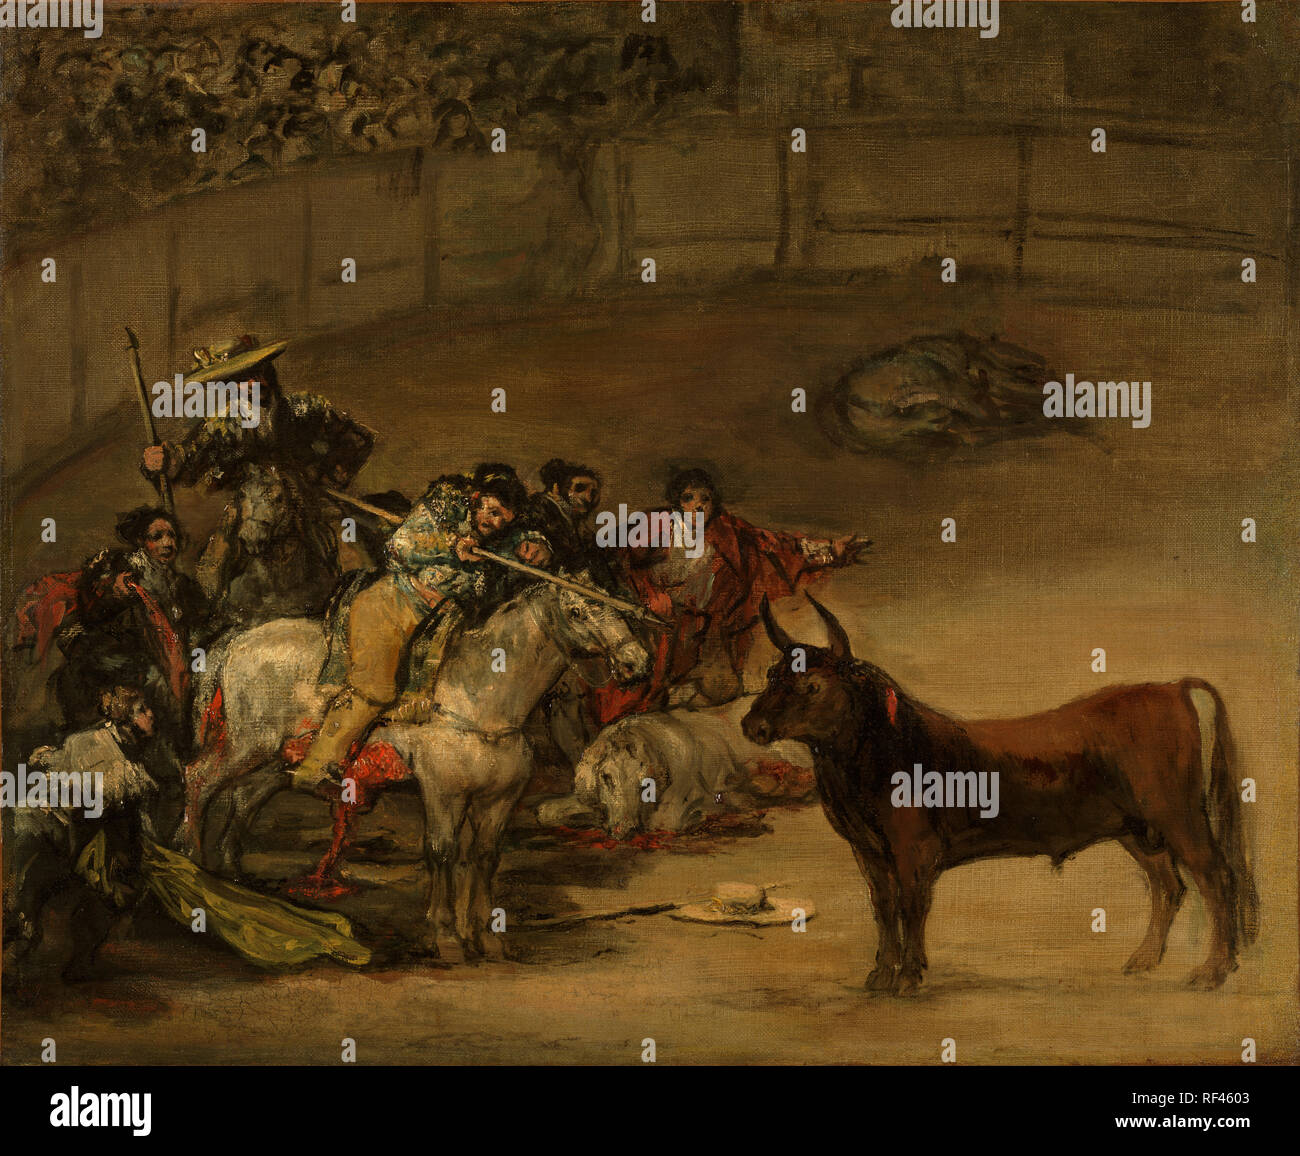 Bullfight, Suerte de Varas; Francisco José de Goya y Lucientes (Francisco de Goya) (Spanish, 1746 - 1828); 1824; Oil on canvas; 49.8 × 70.8 cm (19 5/8 × 27 7/8 in.); 93.PA.1 Stock Photo